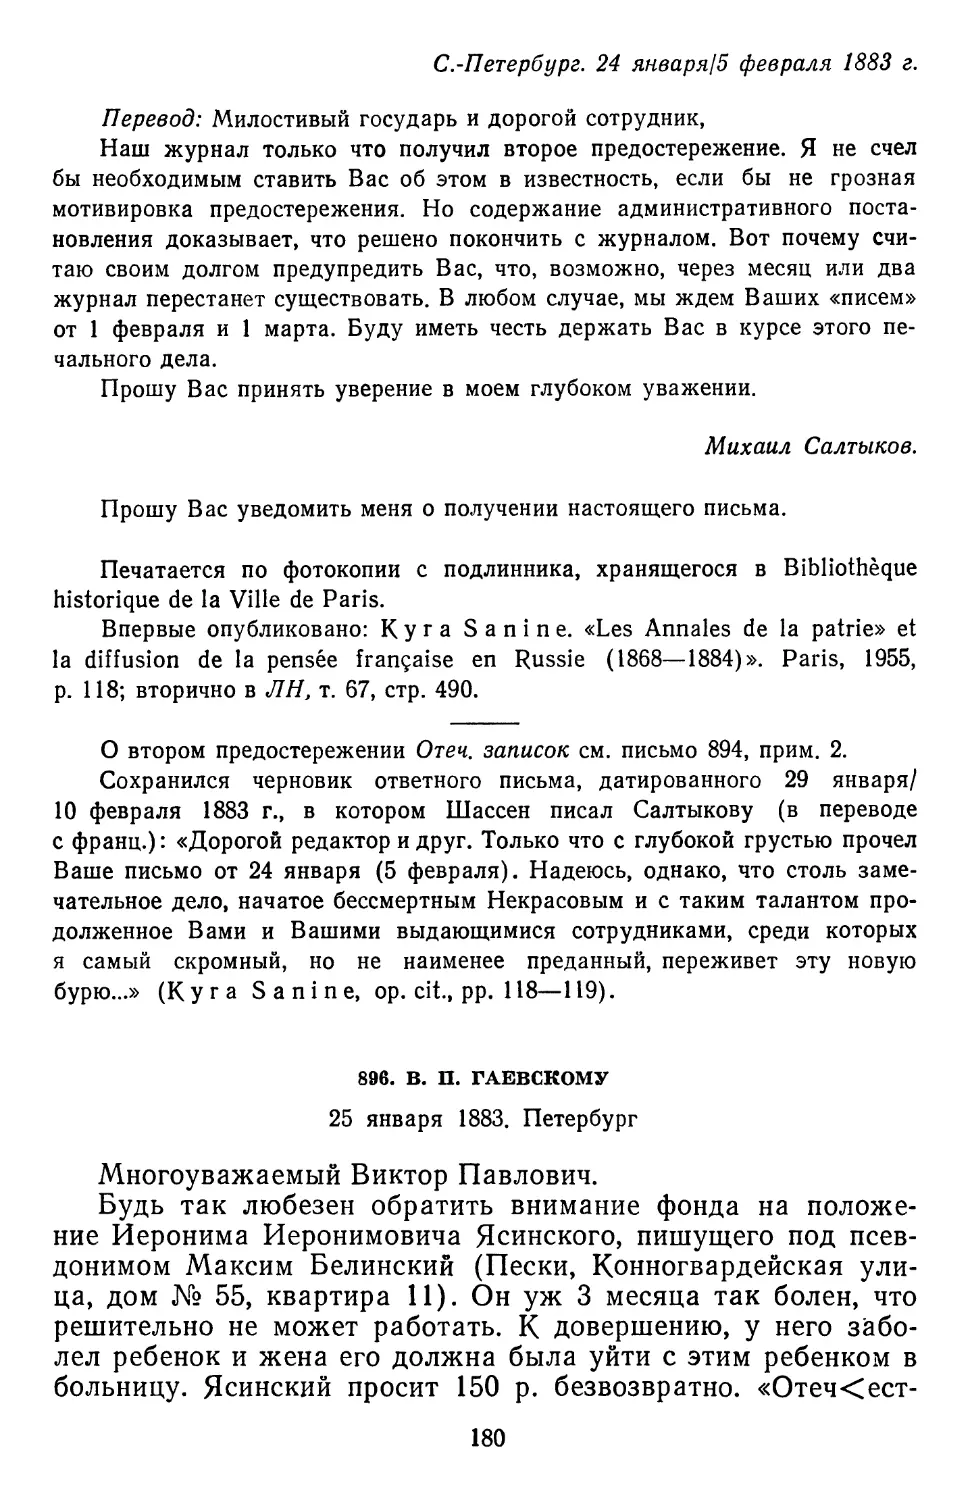 896.В.П. Гаевскому. 25 января 1883. Петербург